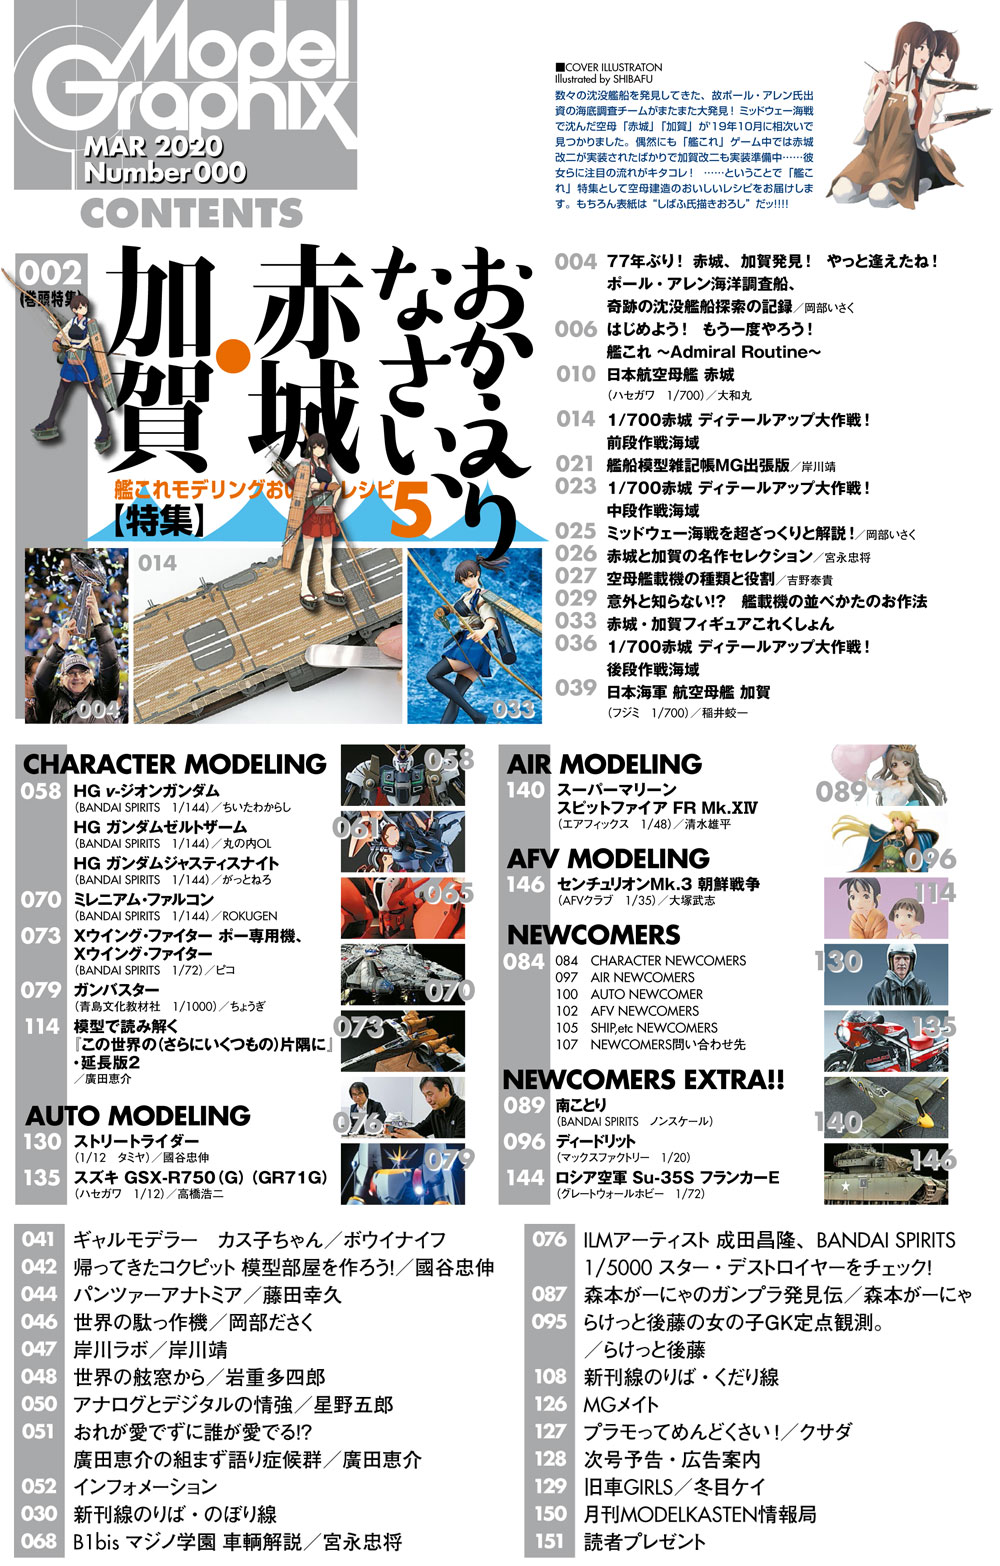 モデルグラフィックス 2020年3月号 雑誌 (大日本絵画 月刊 モデルグラフィックス No.424) 商品画像_1